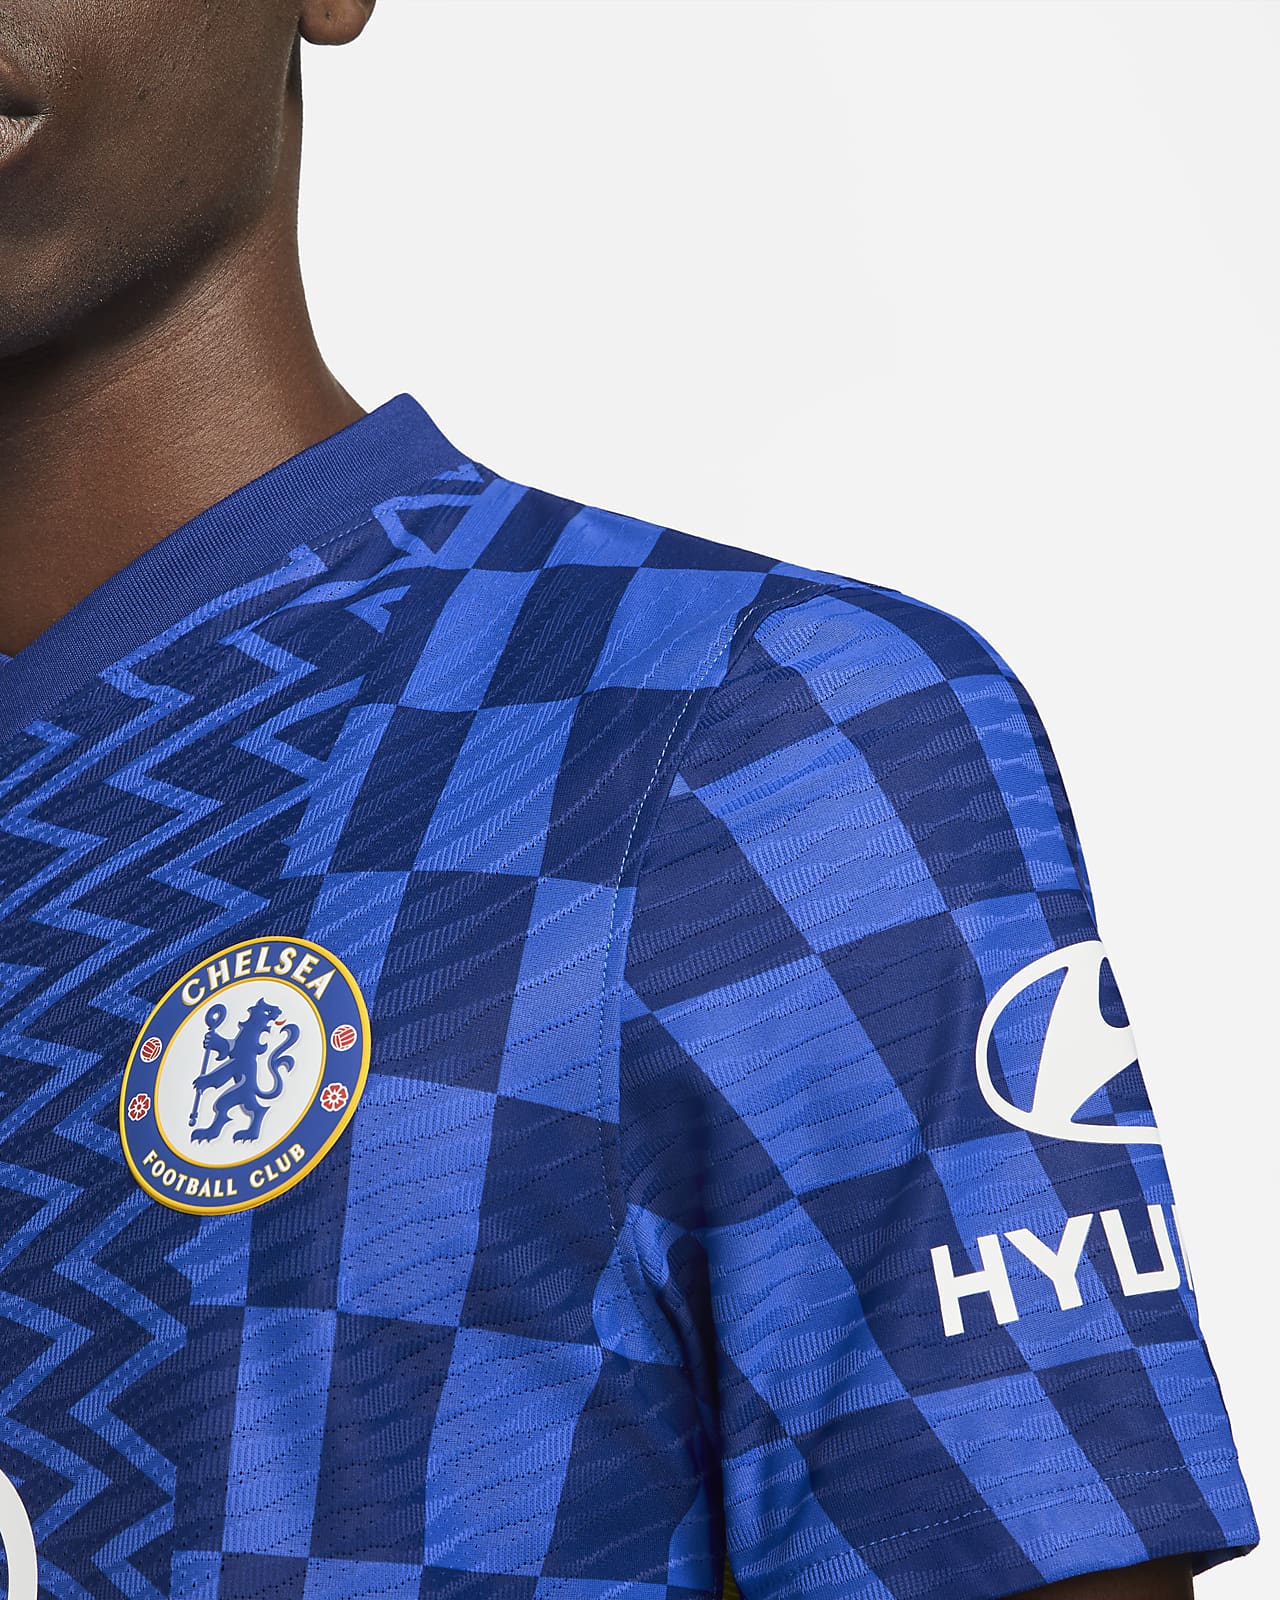 Men's Genuine Chelsea 2021/22 Home Soccer Jersey Football Shirt Short Sleeve